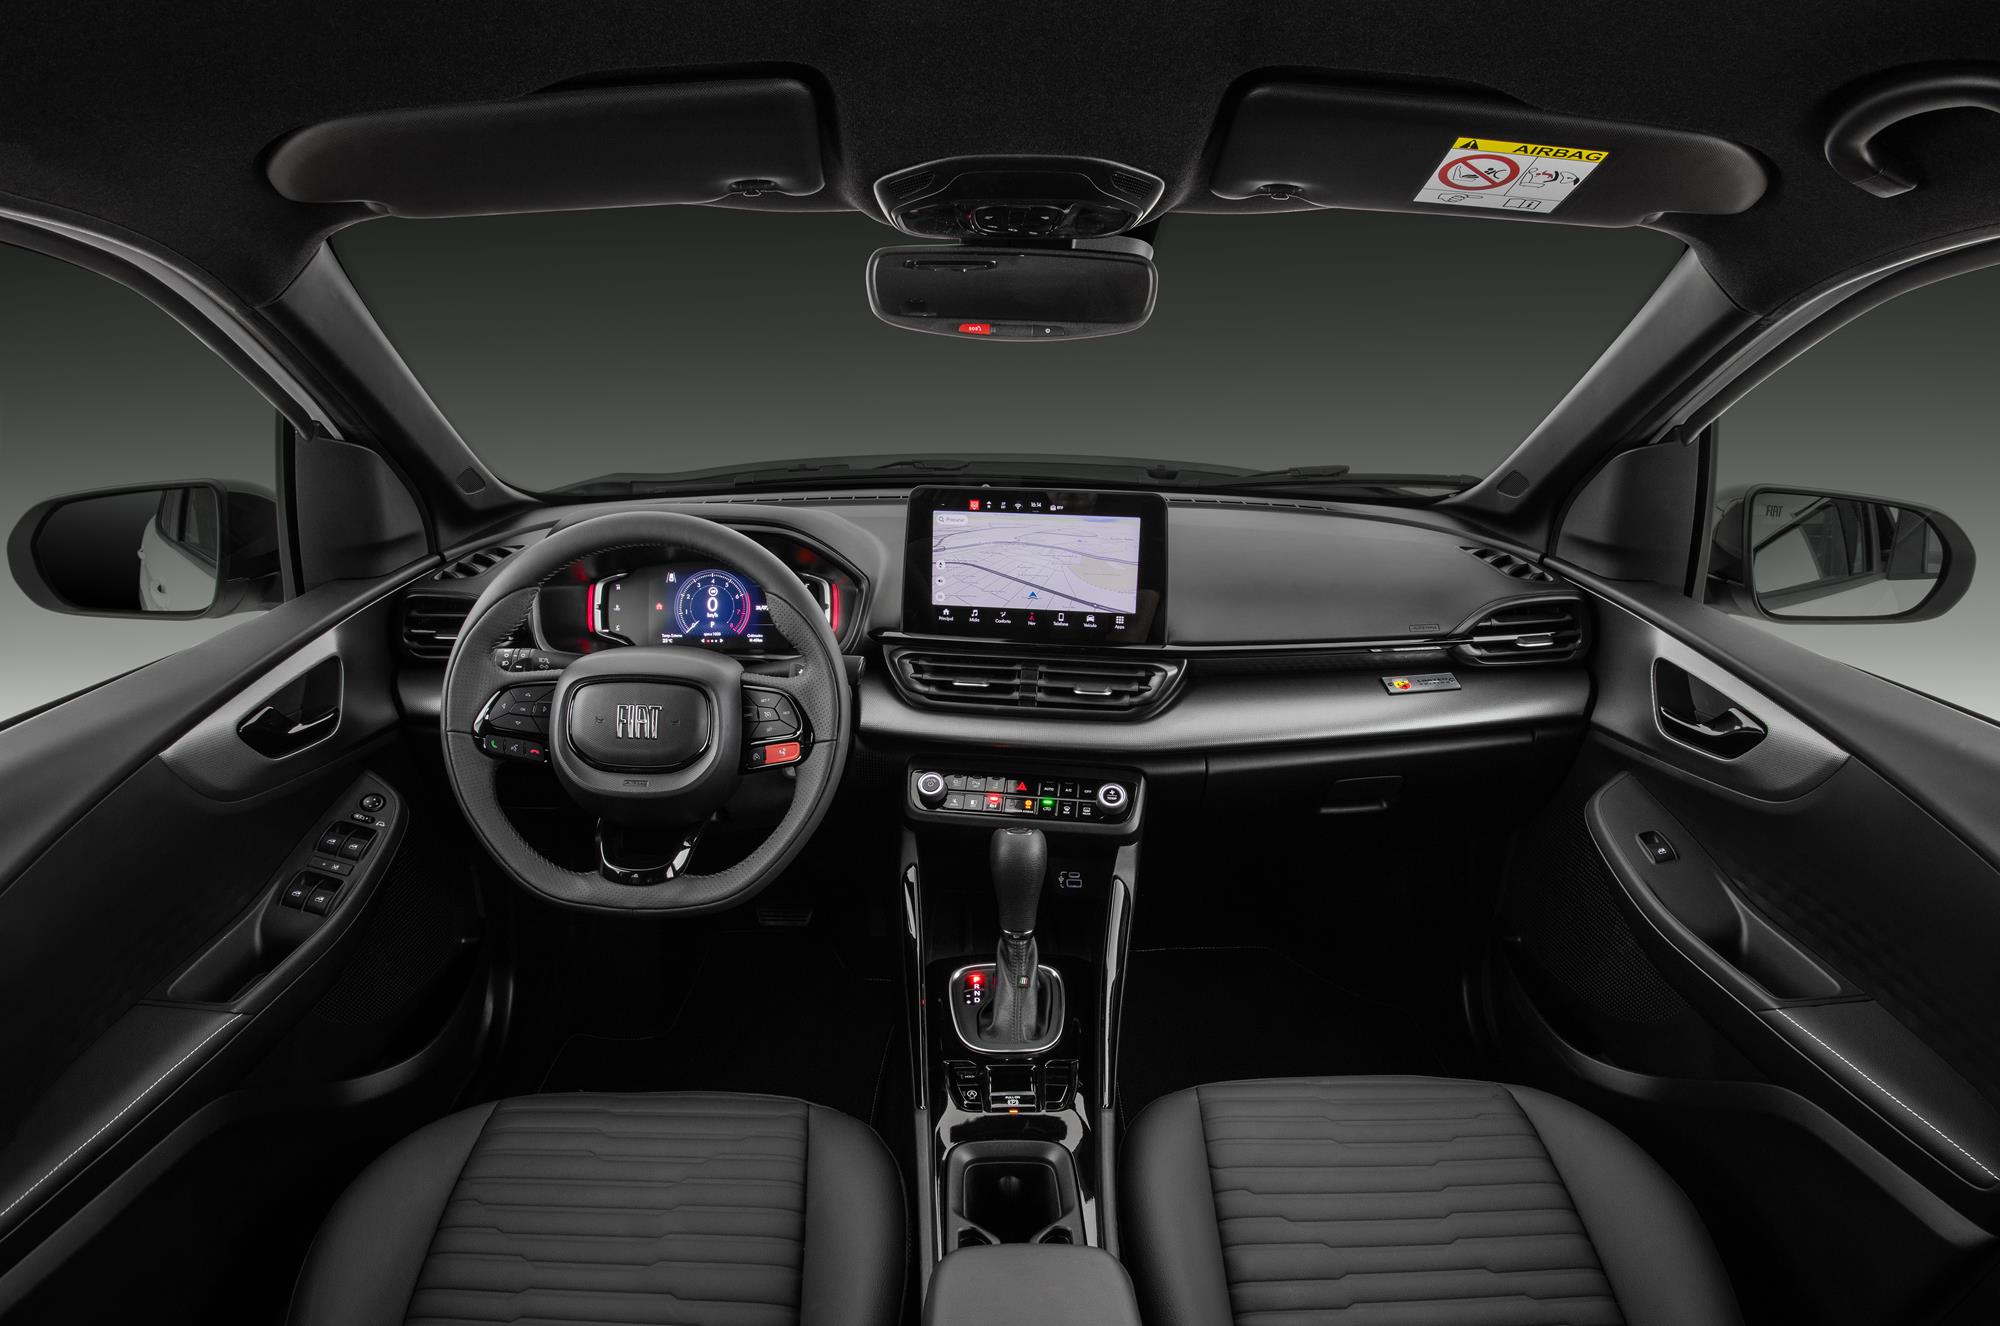 SUV Fiat Fastback, irmão do Pulse, é lançado com preço de R$ 129.990